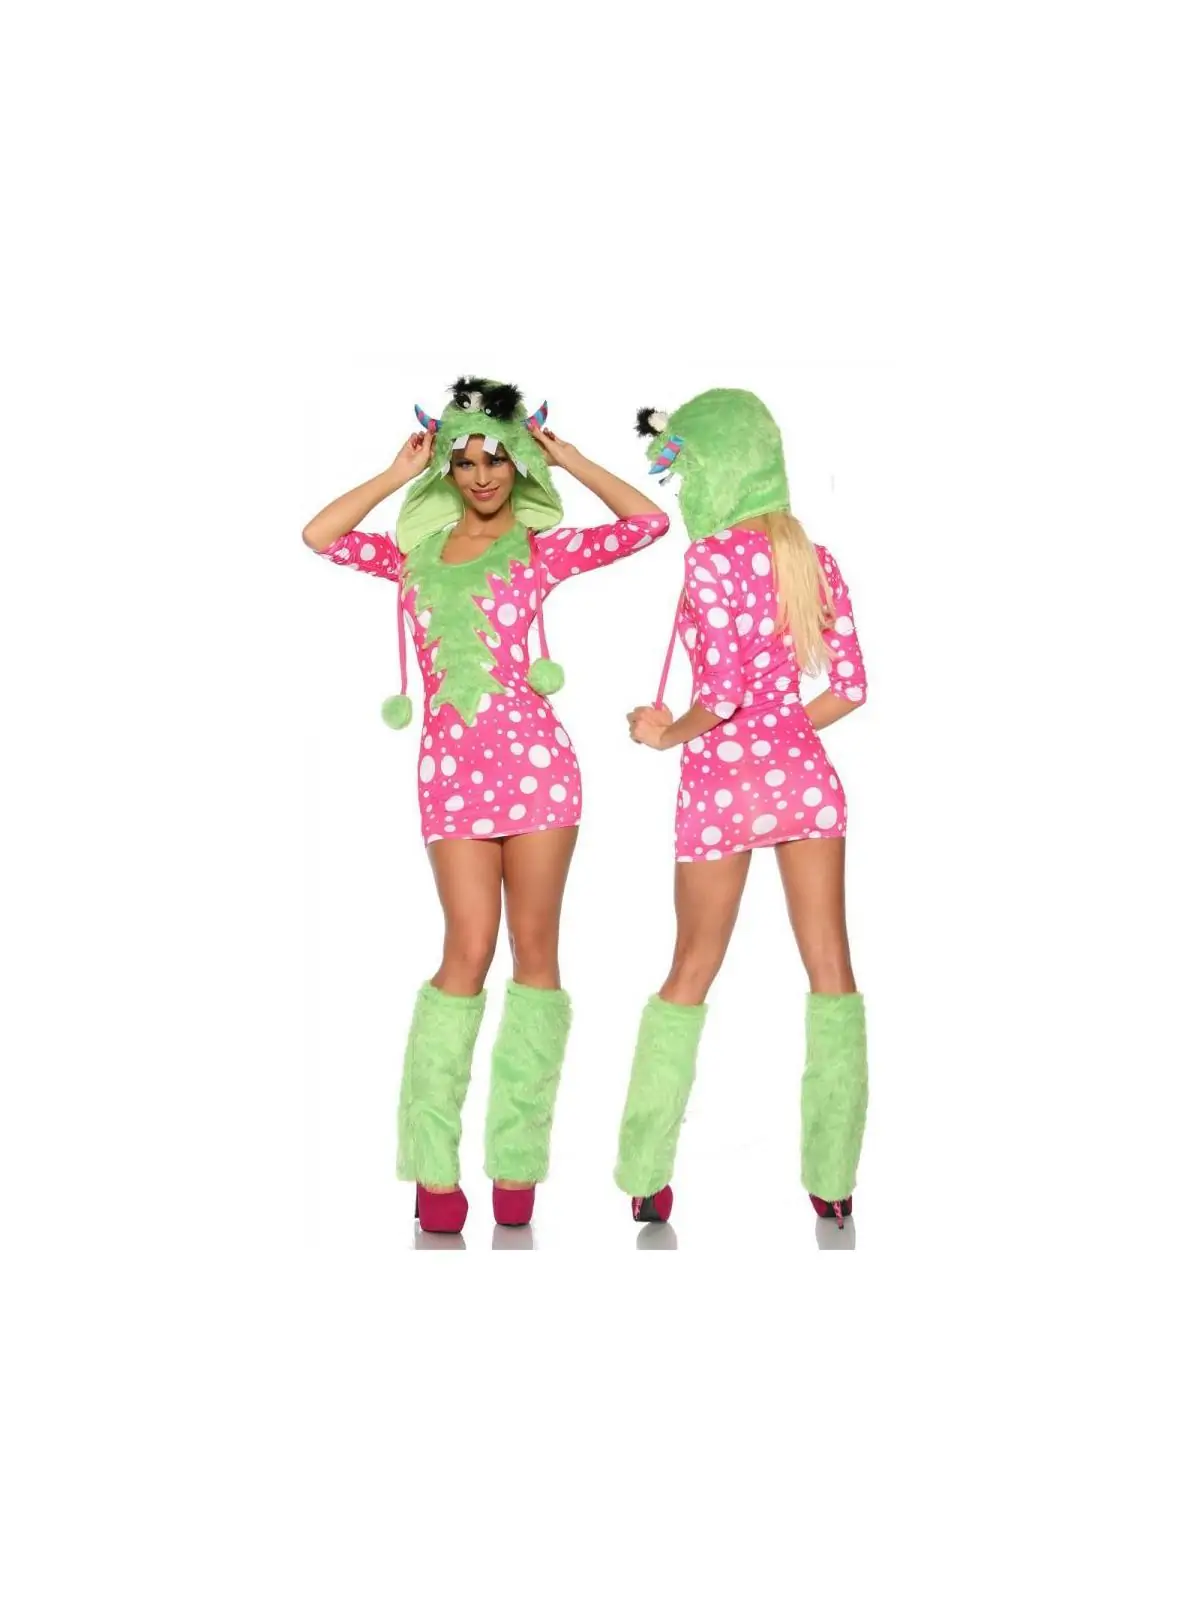 Sexy-Monster-Kostüm grün/pink kaufen - Fesselliebe